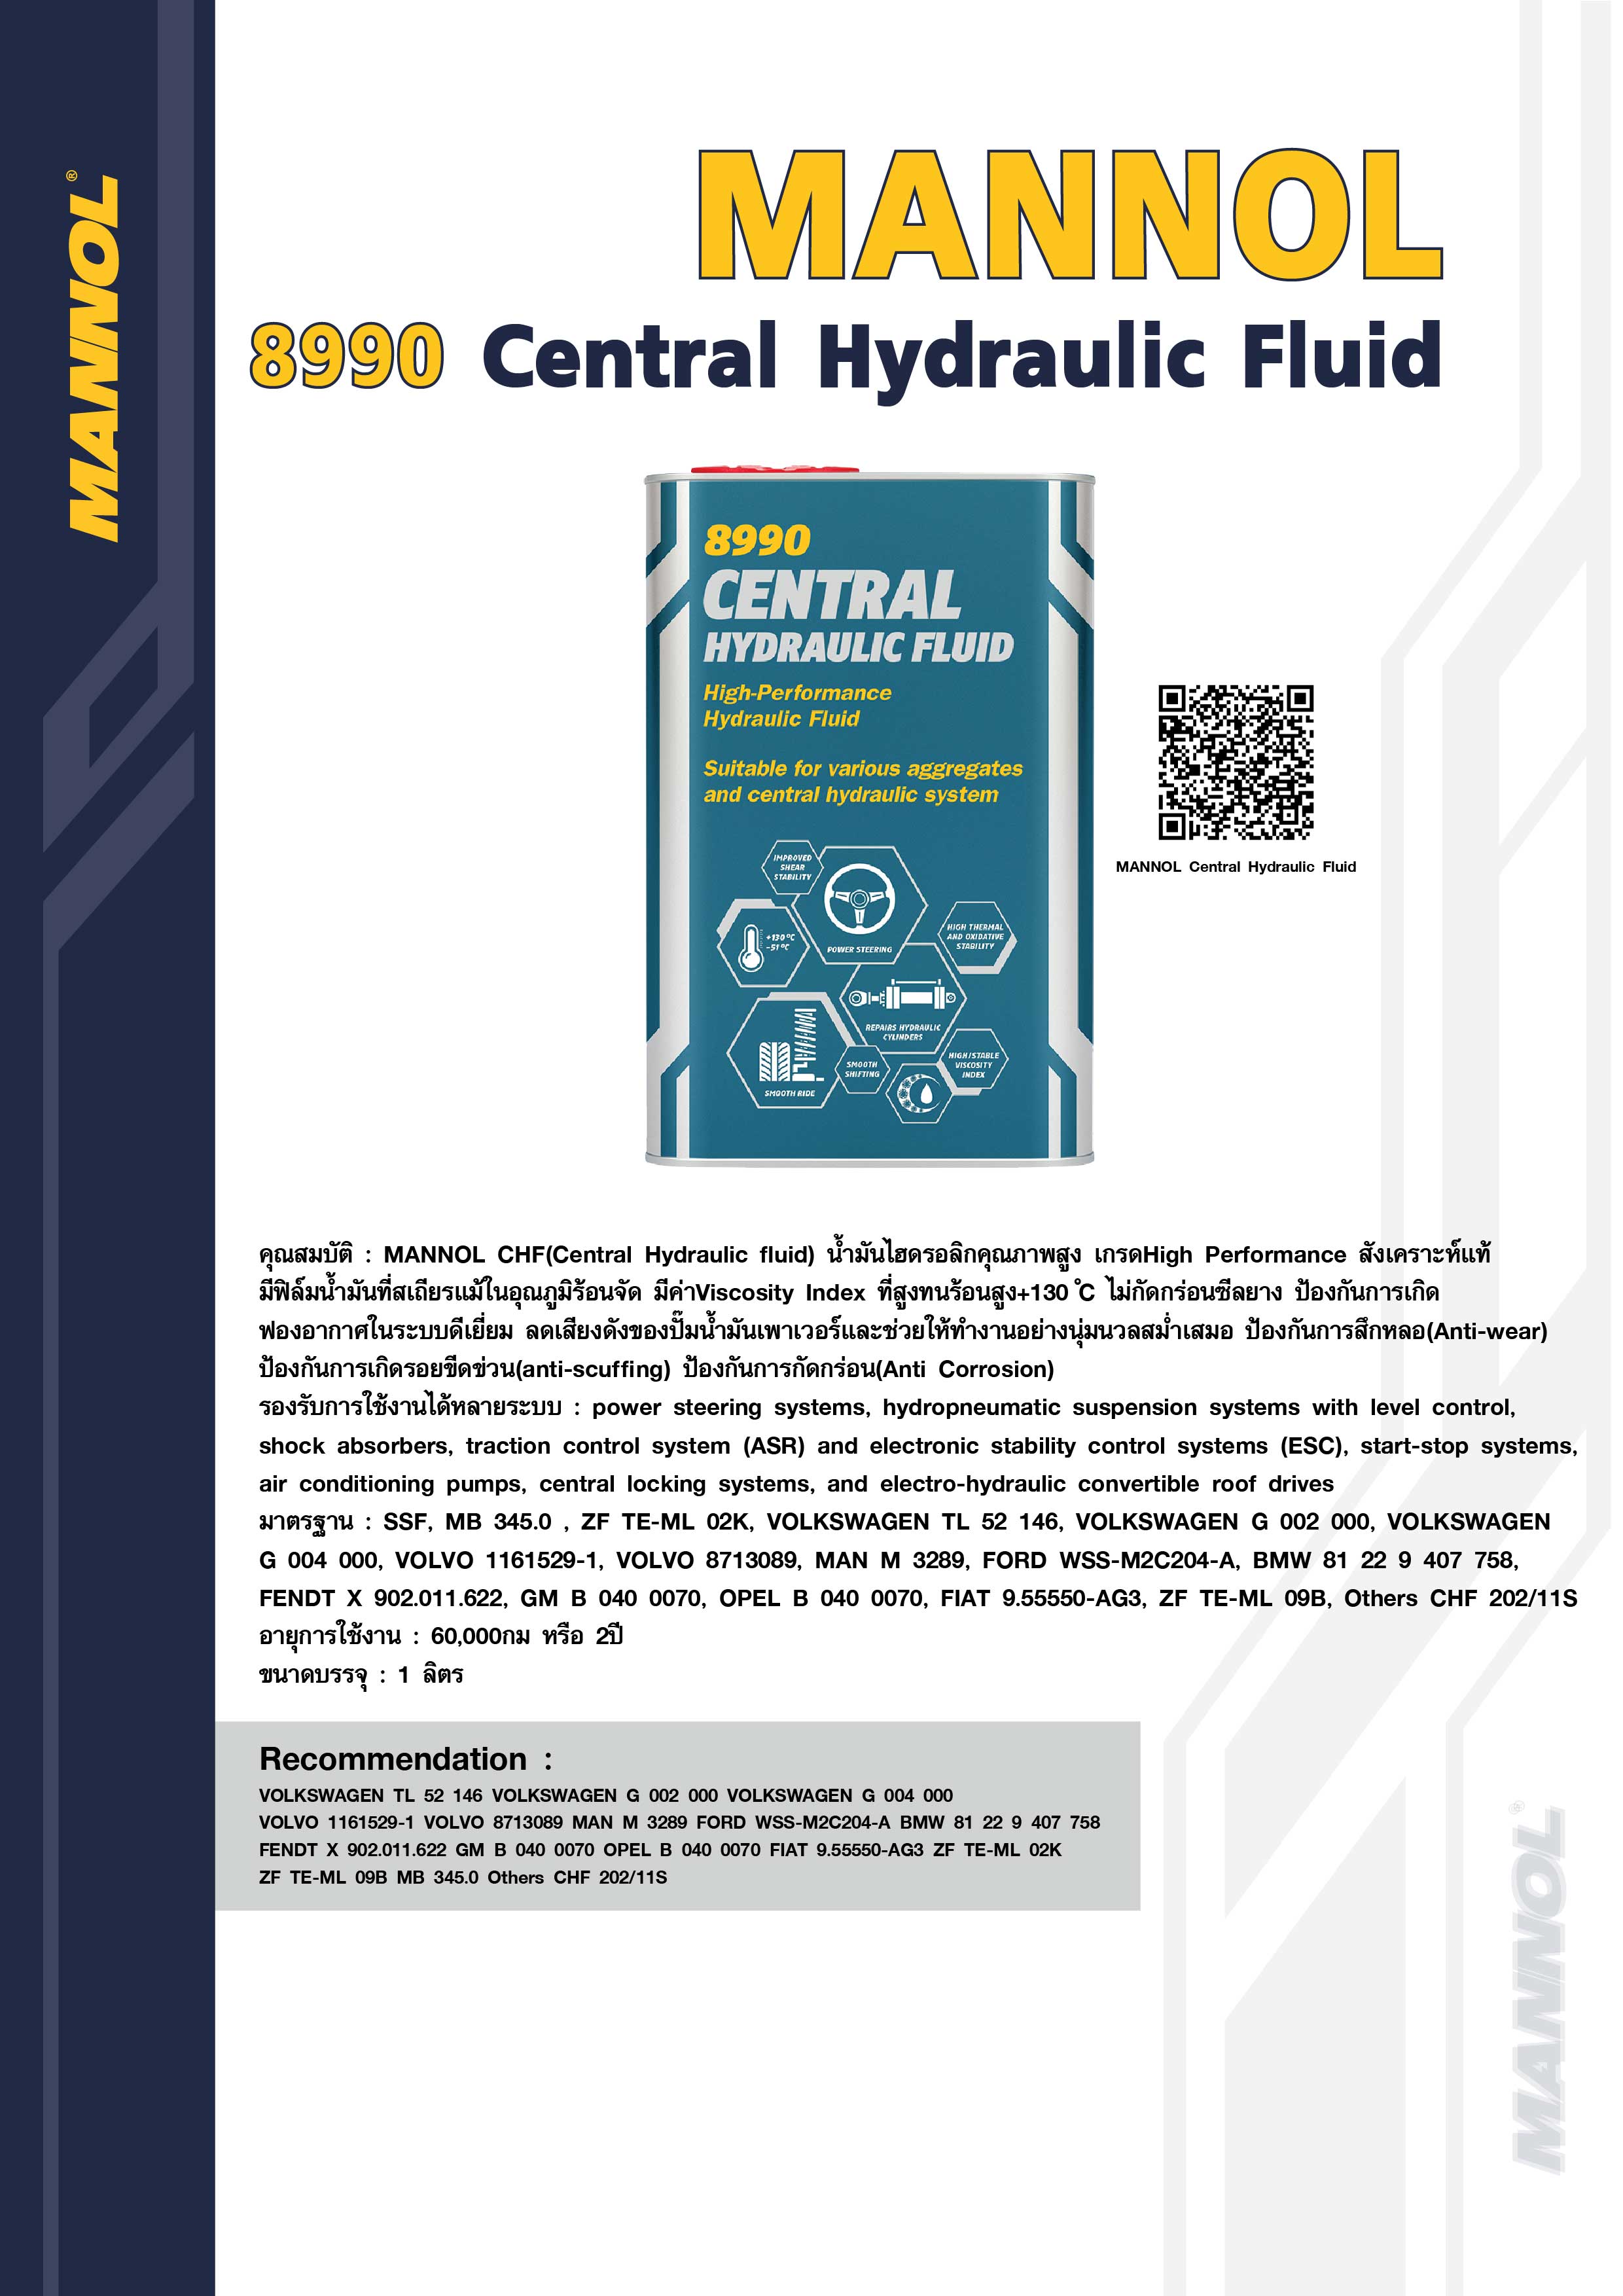 MANNOL Central Hydraulic Fluid 8990